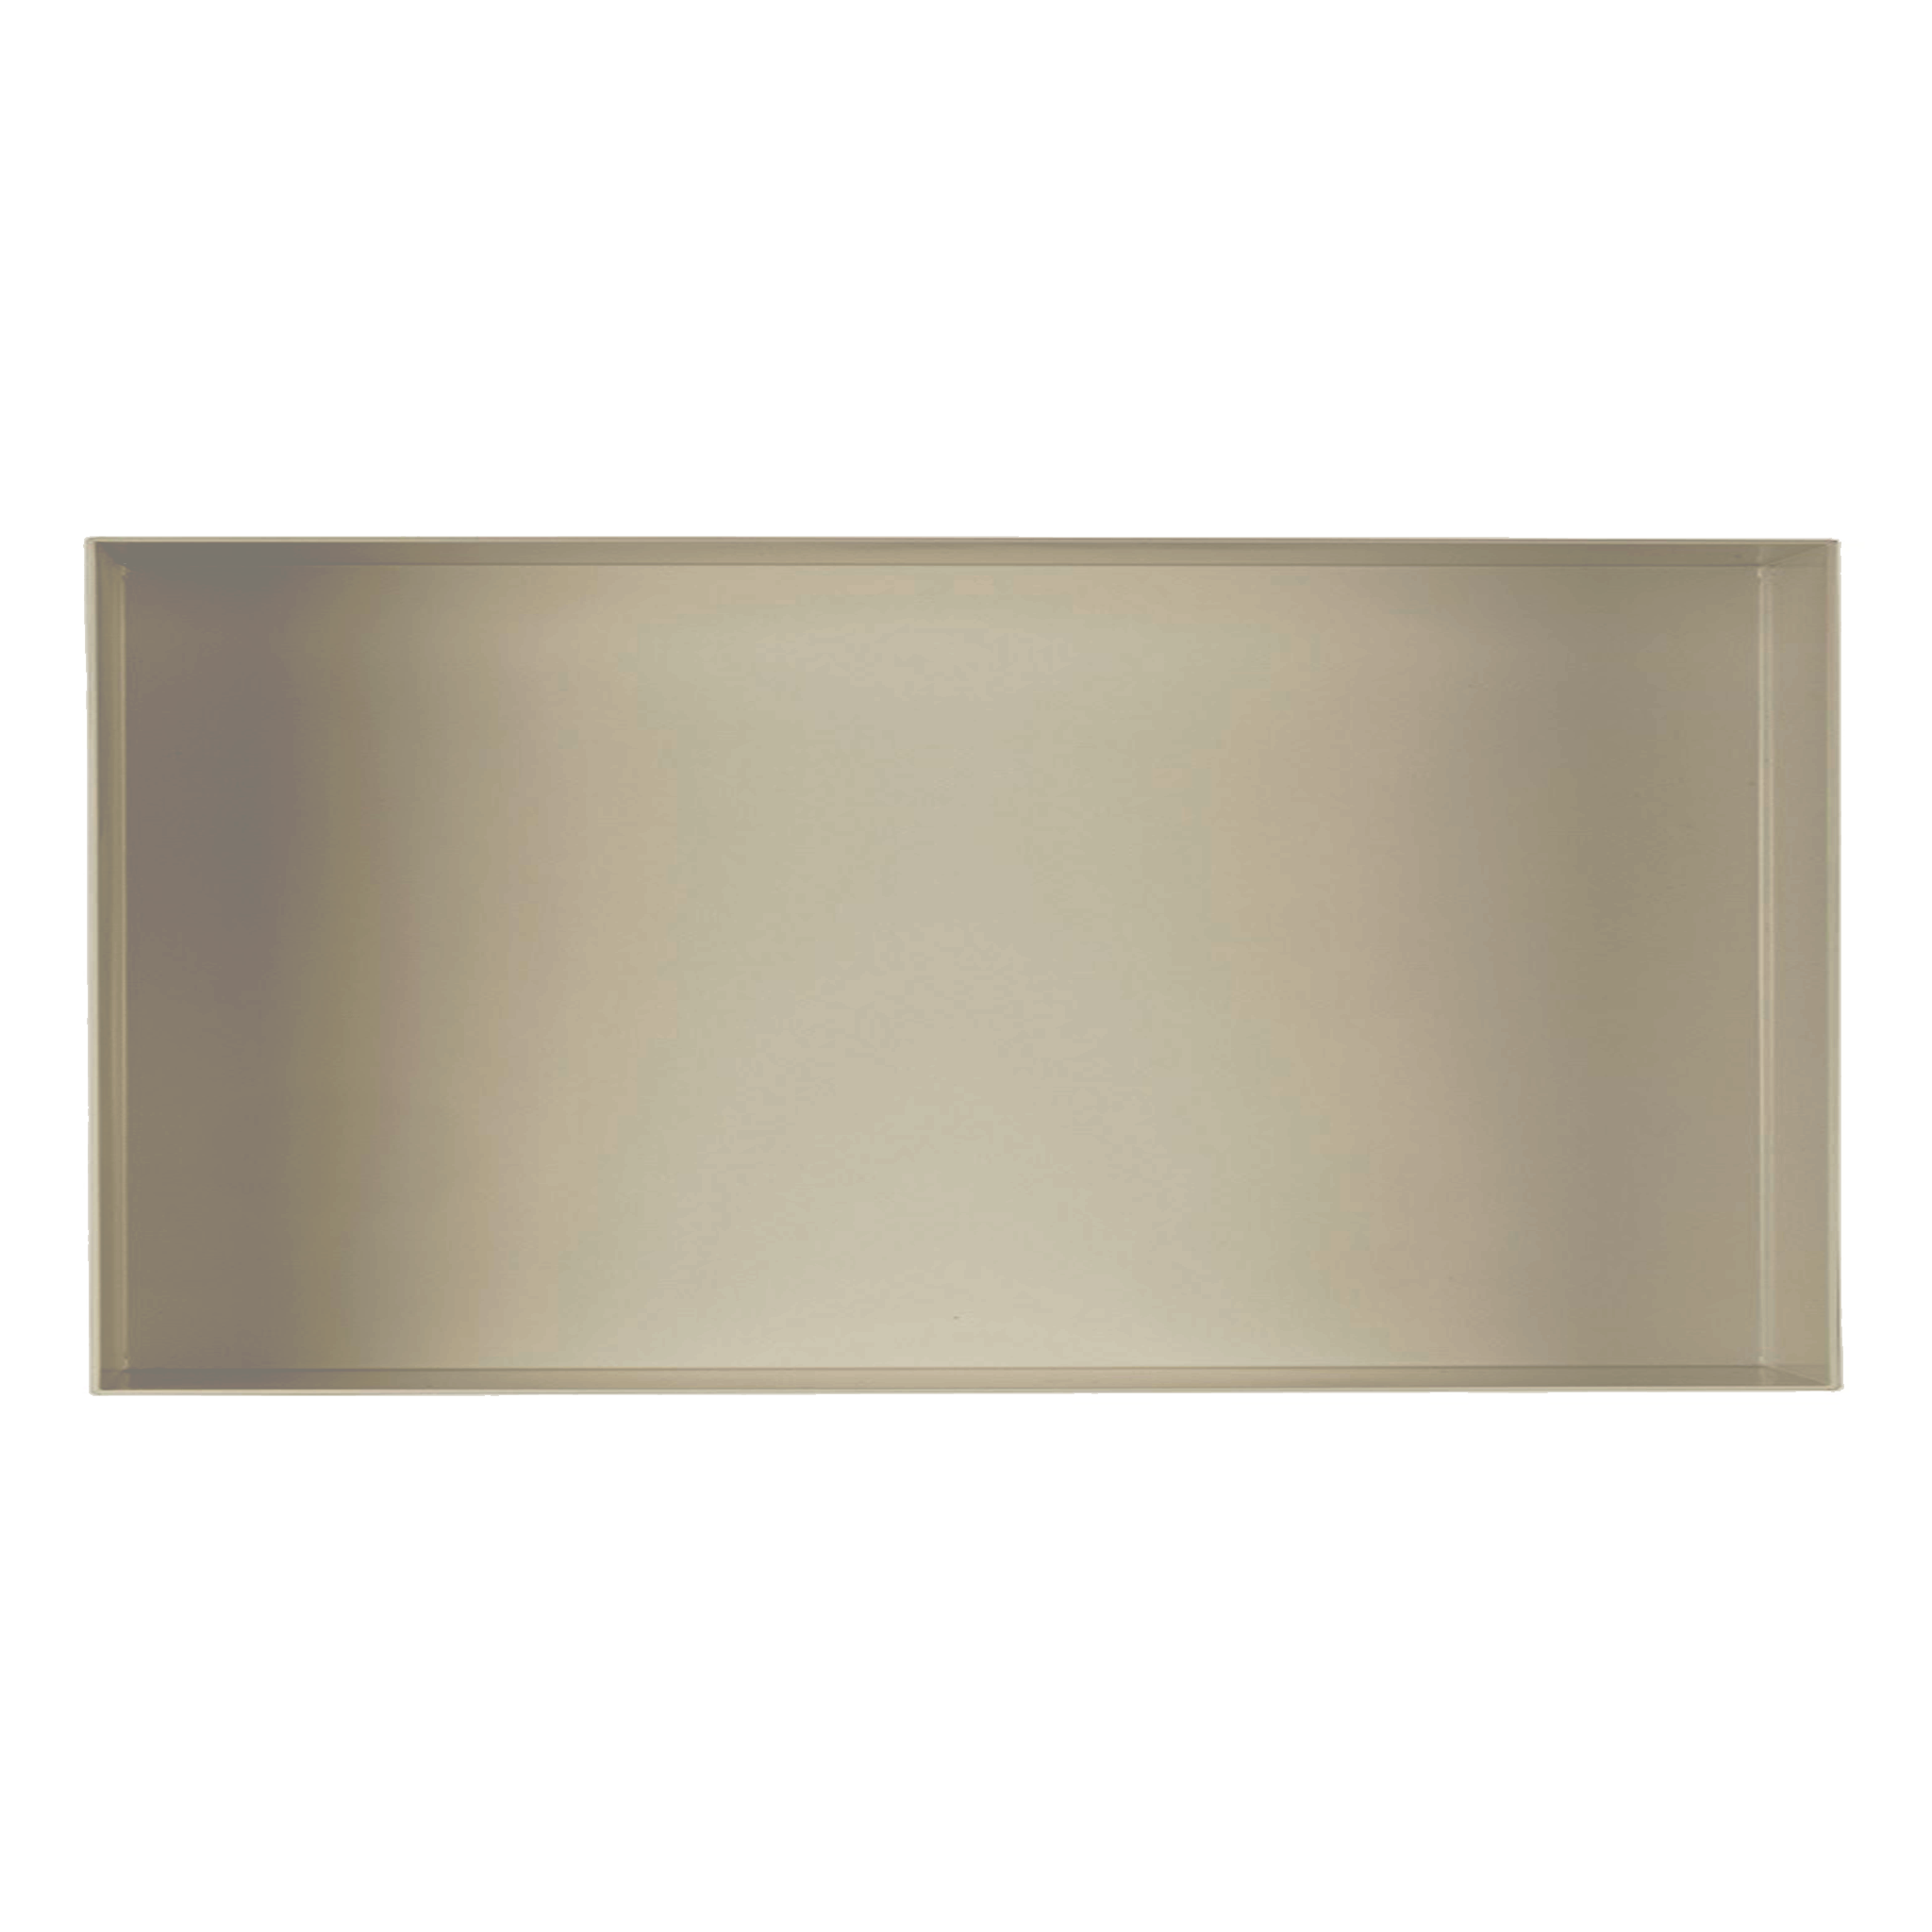 Valli Home – V-Box, Nicchia portaoggetti in Metallo smaltato color Grigio Chiaro KK64, Misura 30X60 P. 10 cm – V-BOX.MLLO.30X60.64